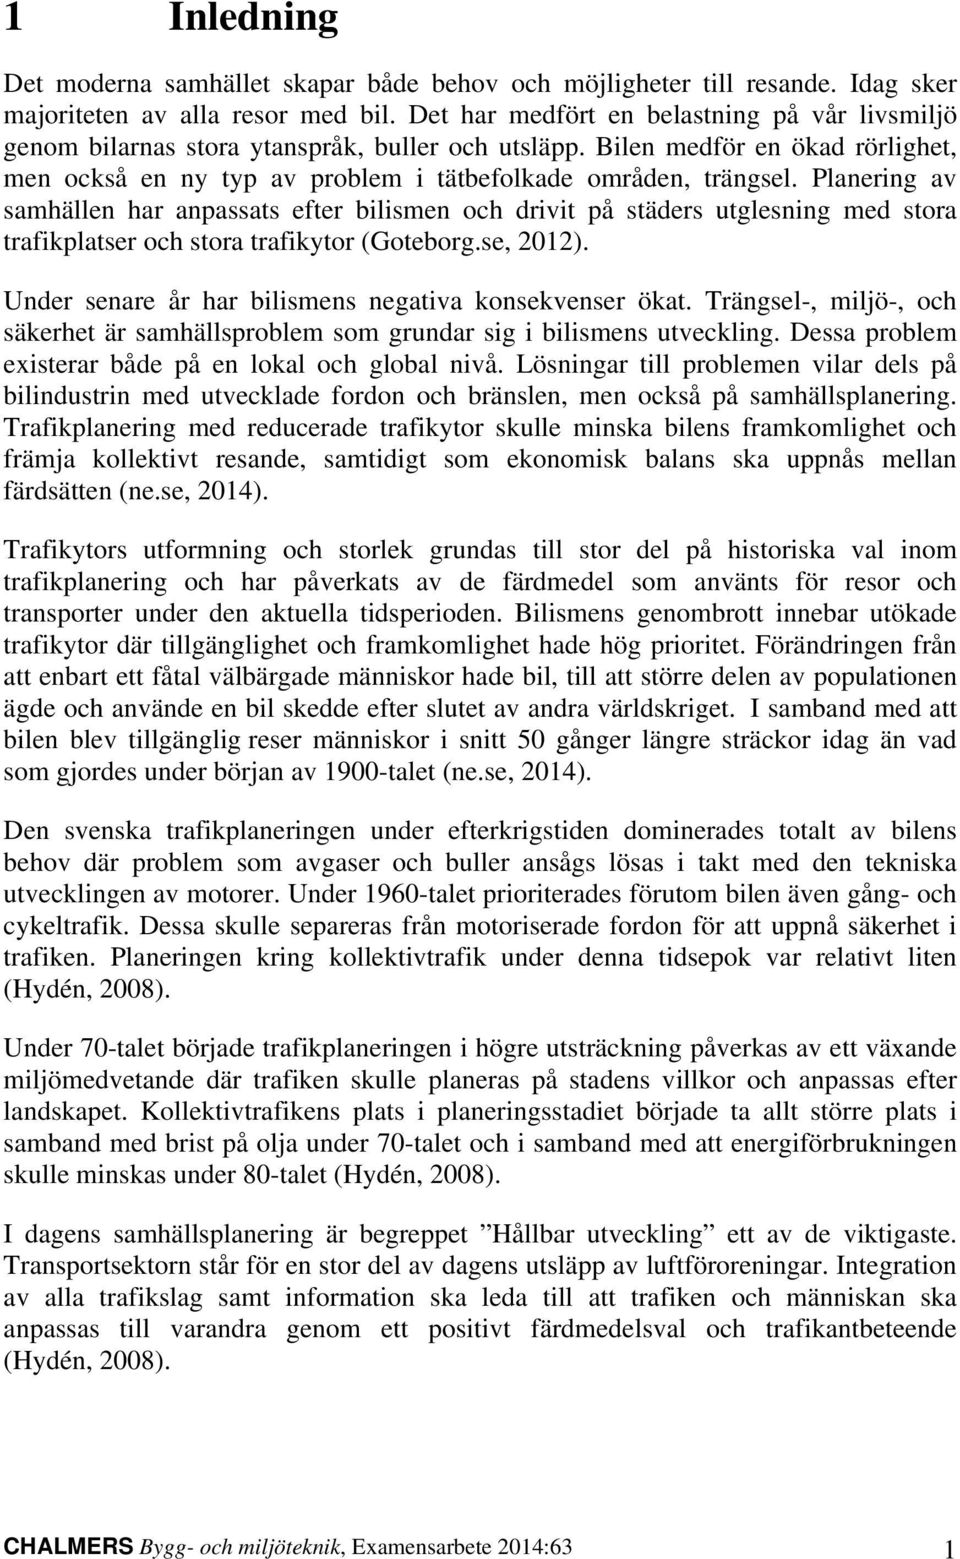 Planering av samhällen har anpassats efter bilismen och drivit på städers utglesning med stora trafikplatser och stora trafikytor (Goteborg.se, 2012).